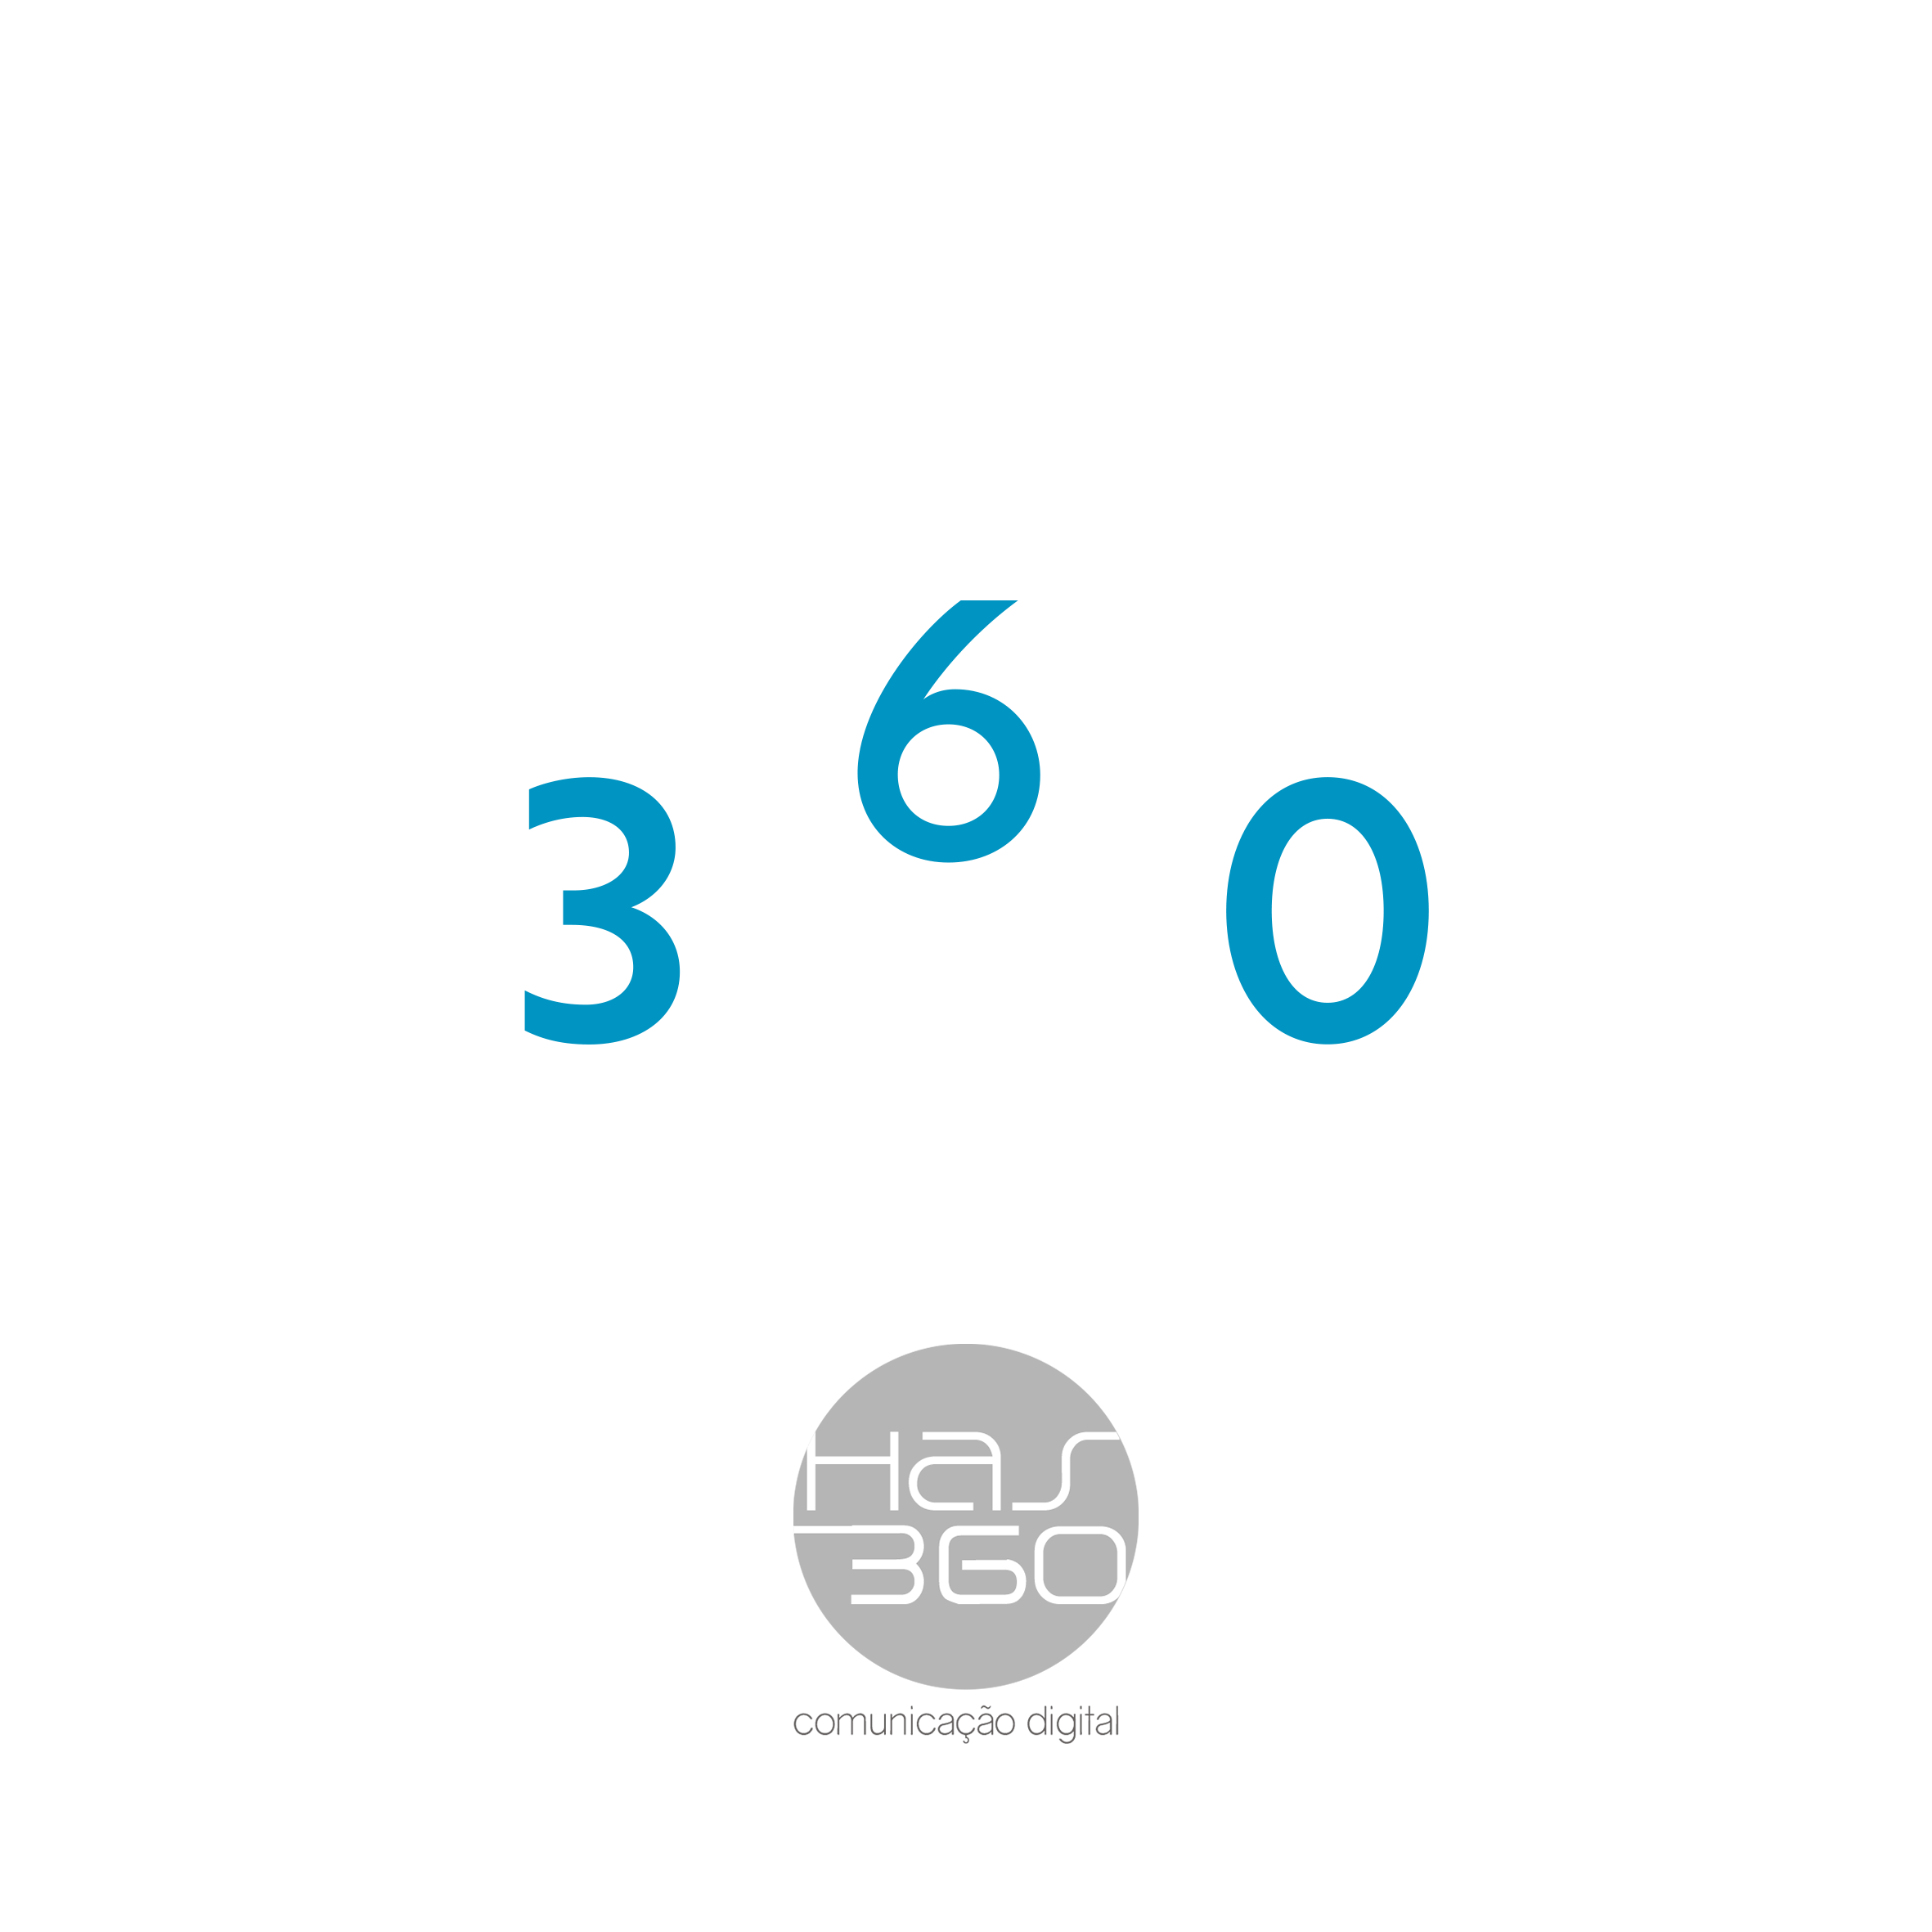 HAS360 Especialista em tecnologia 360º